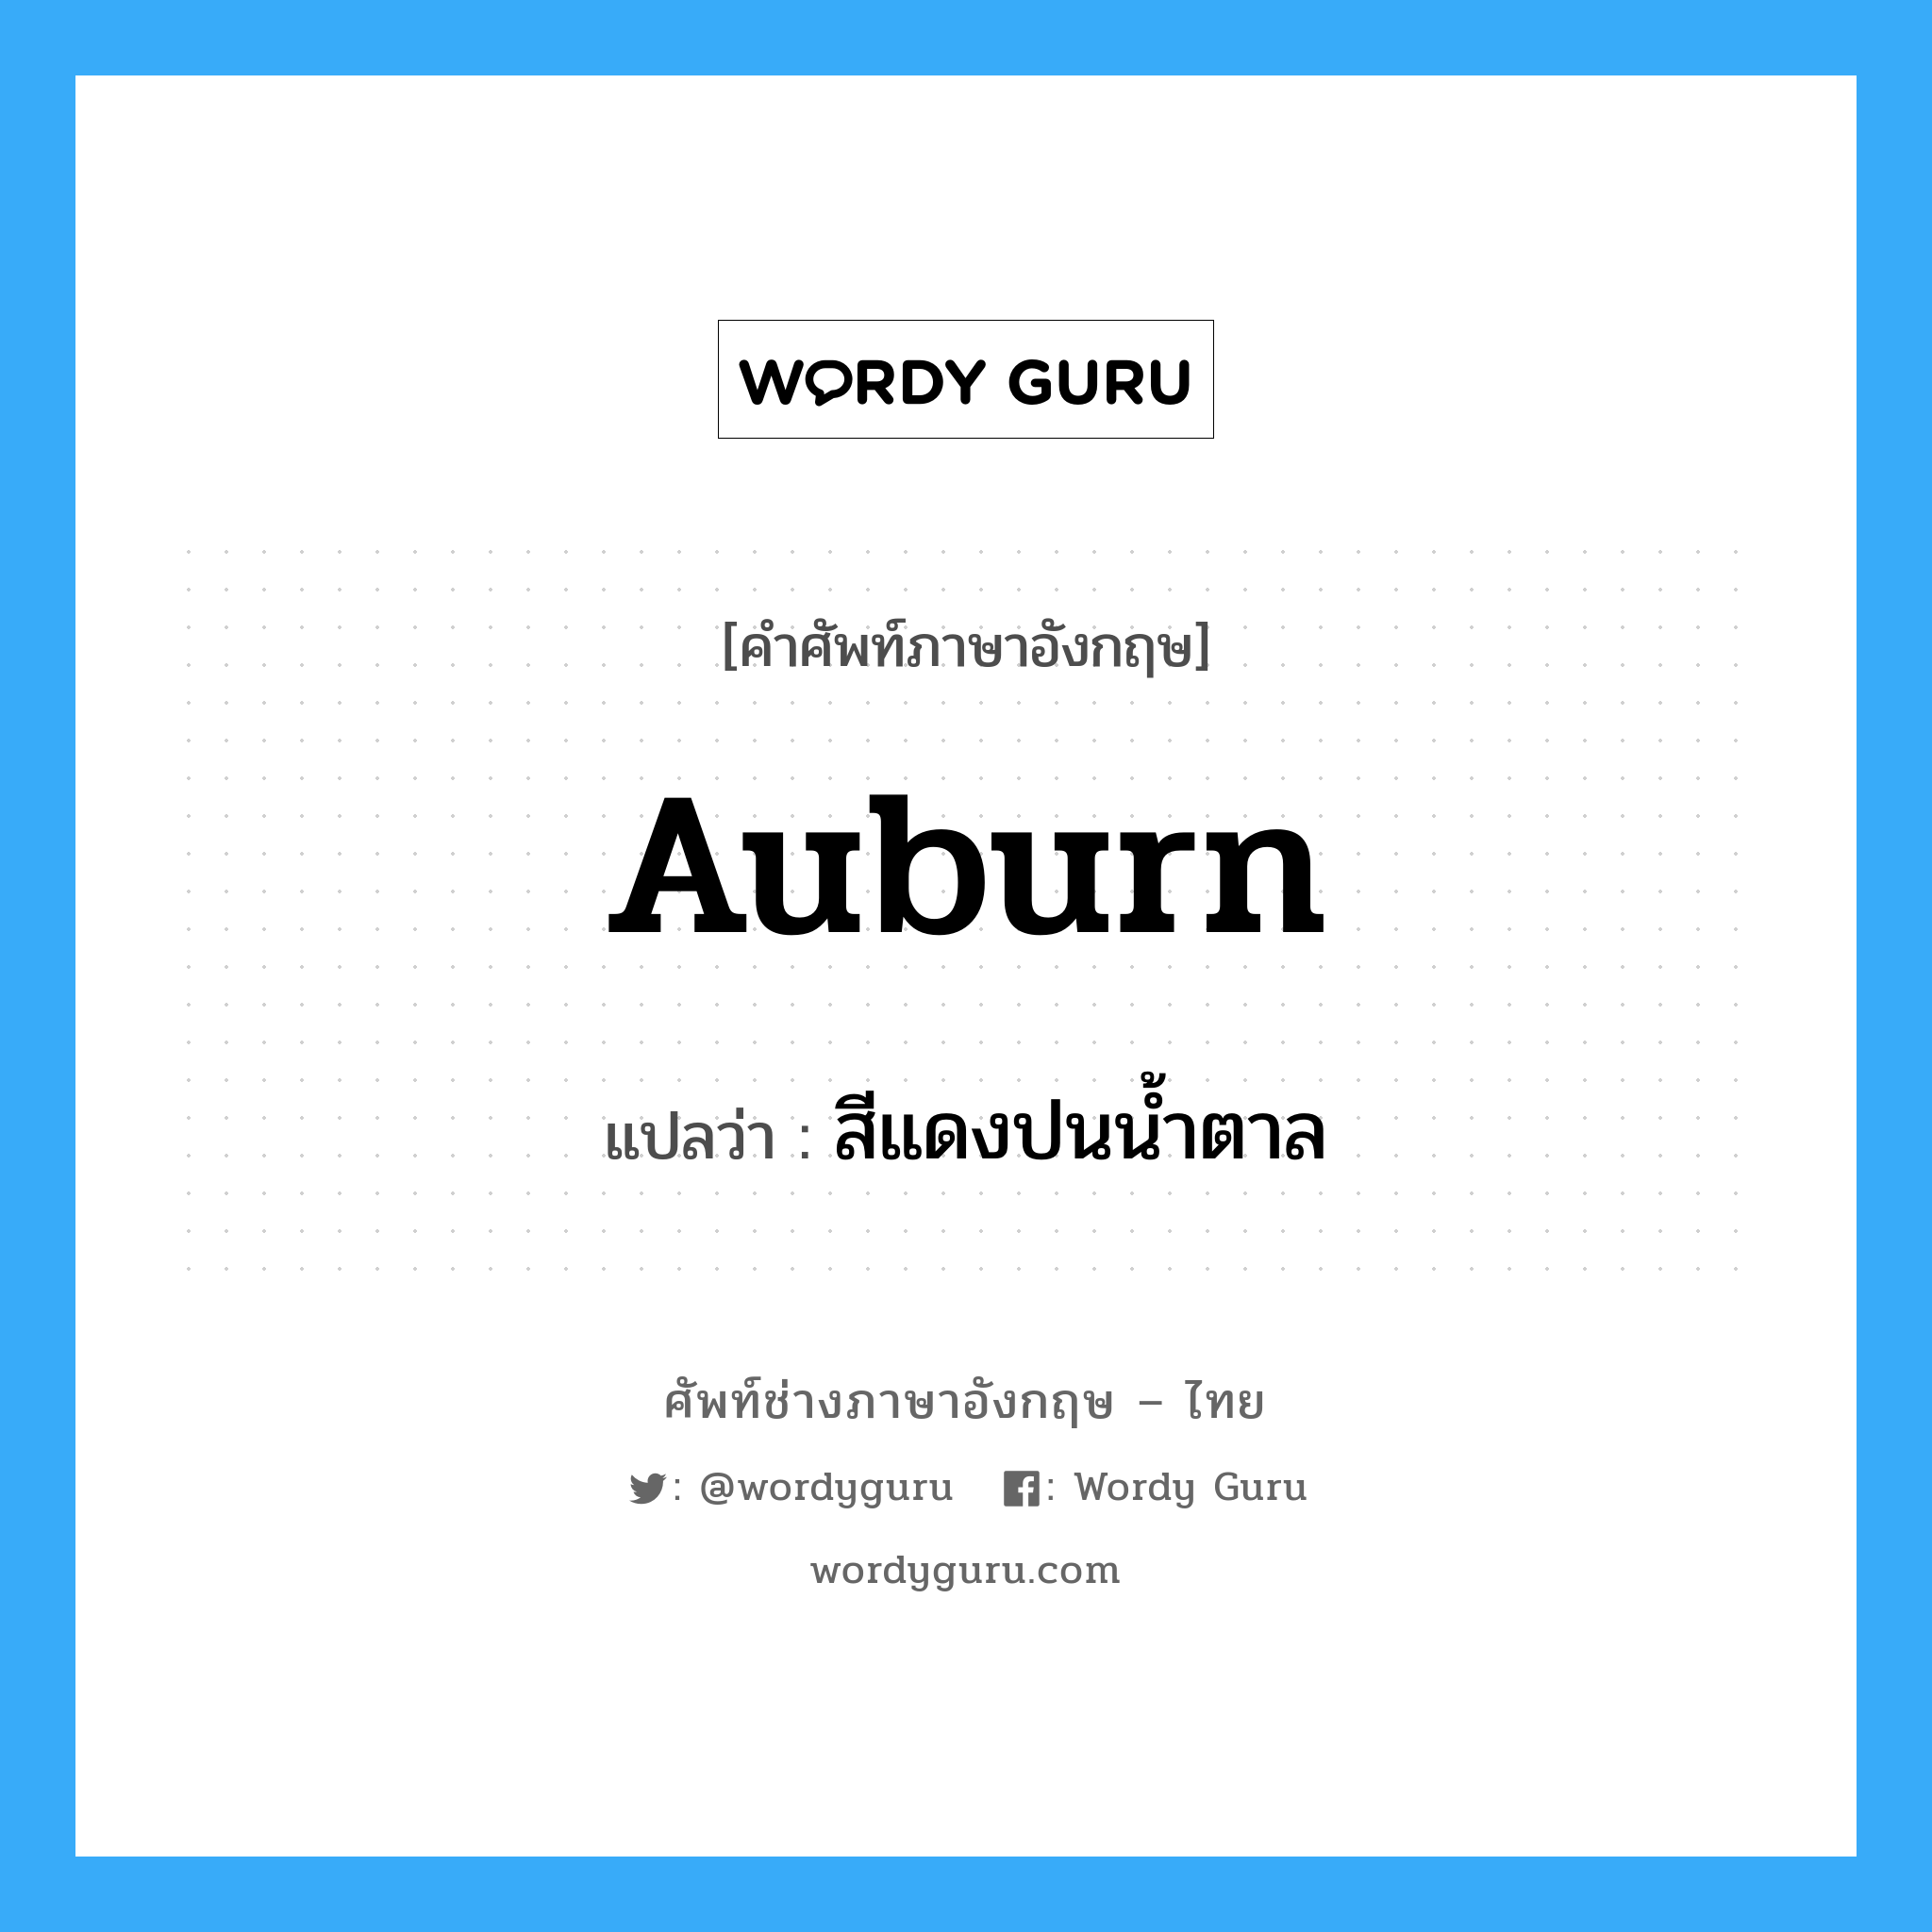 auburn แปลว่า?, คำศัพท์ช่างภาษาอังกฤษ - ไทย auburn คำศัพท์ภาษาอังกฤษ auburn แปลว่า สีแดงปนน้ำตาล